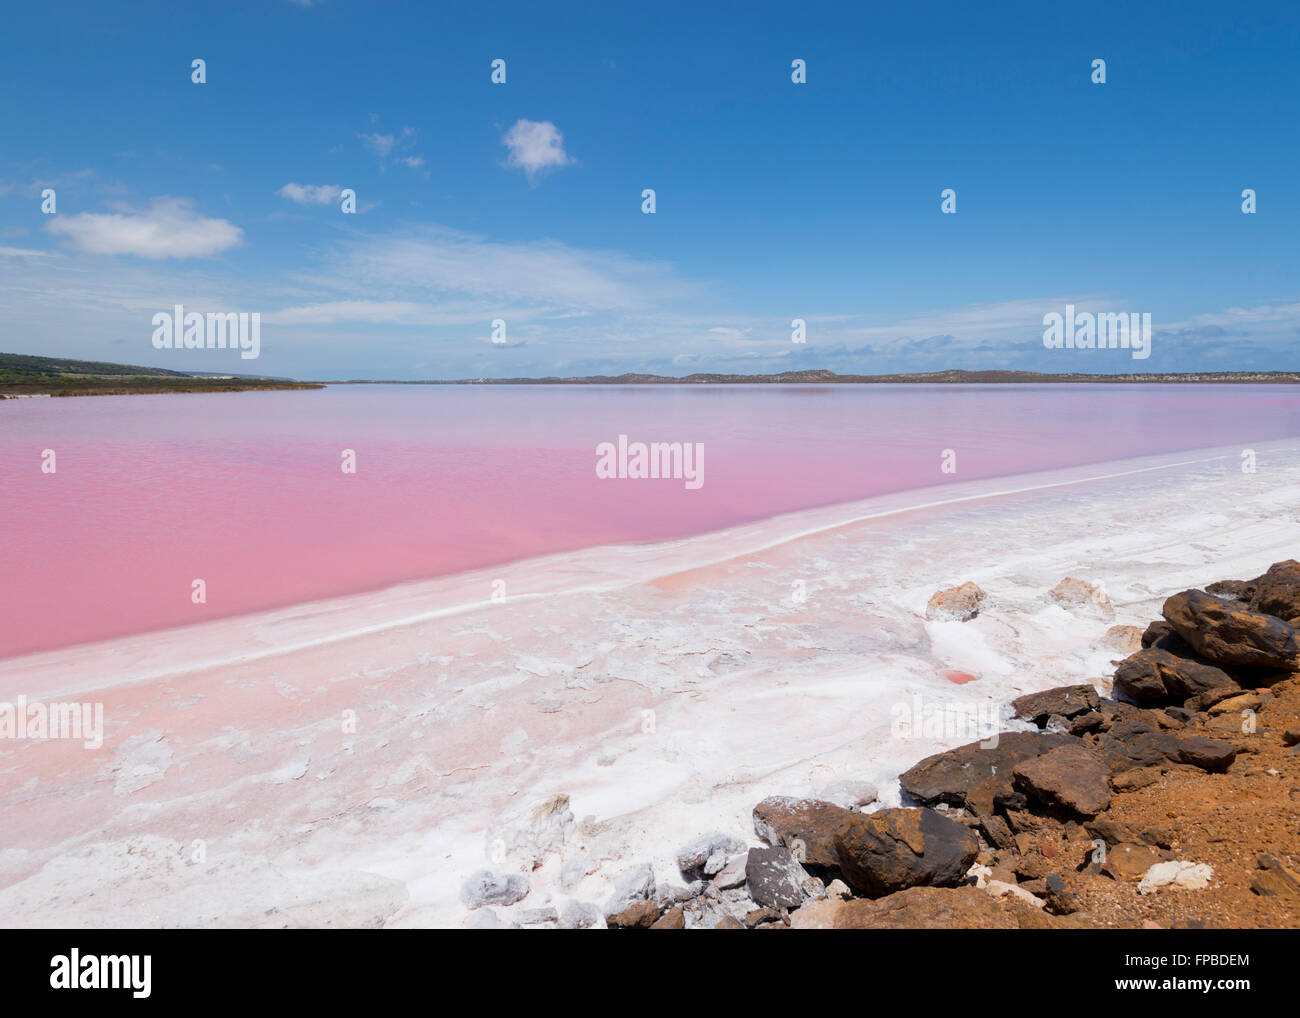 Hutt, laguna, Lago Rosa que contiene beta-caroteno, Australia Occidental, WA, Australia Foto de stock